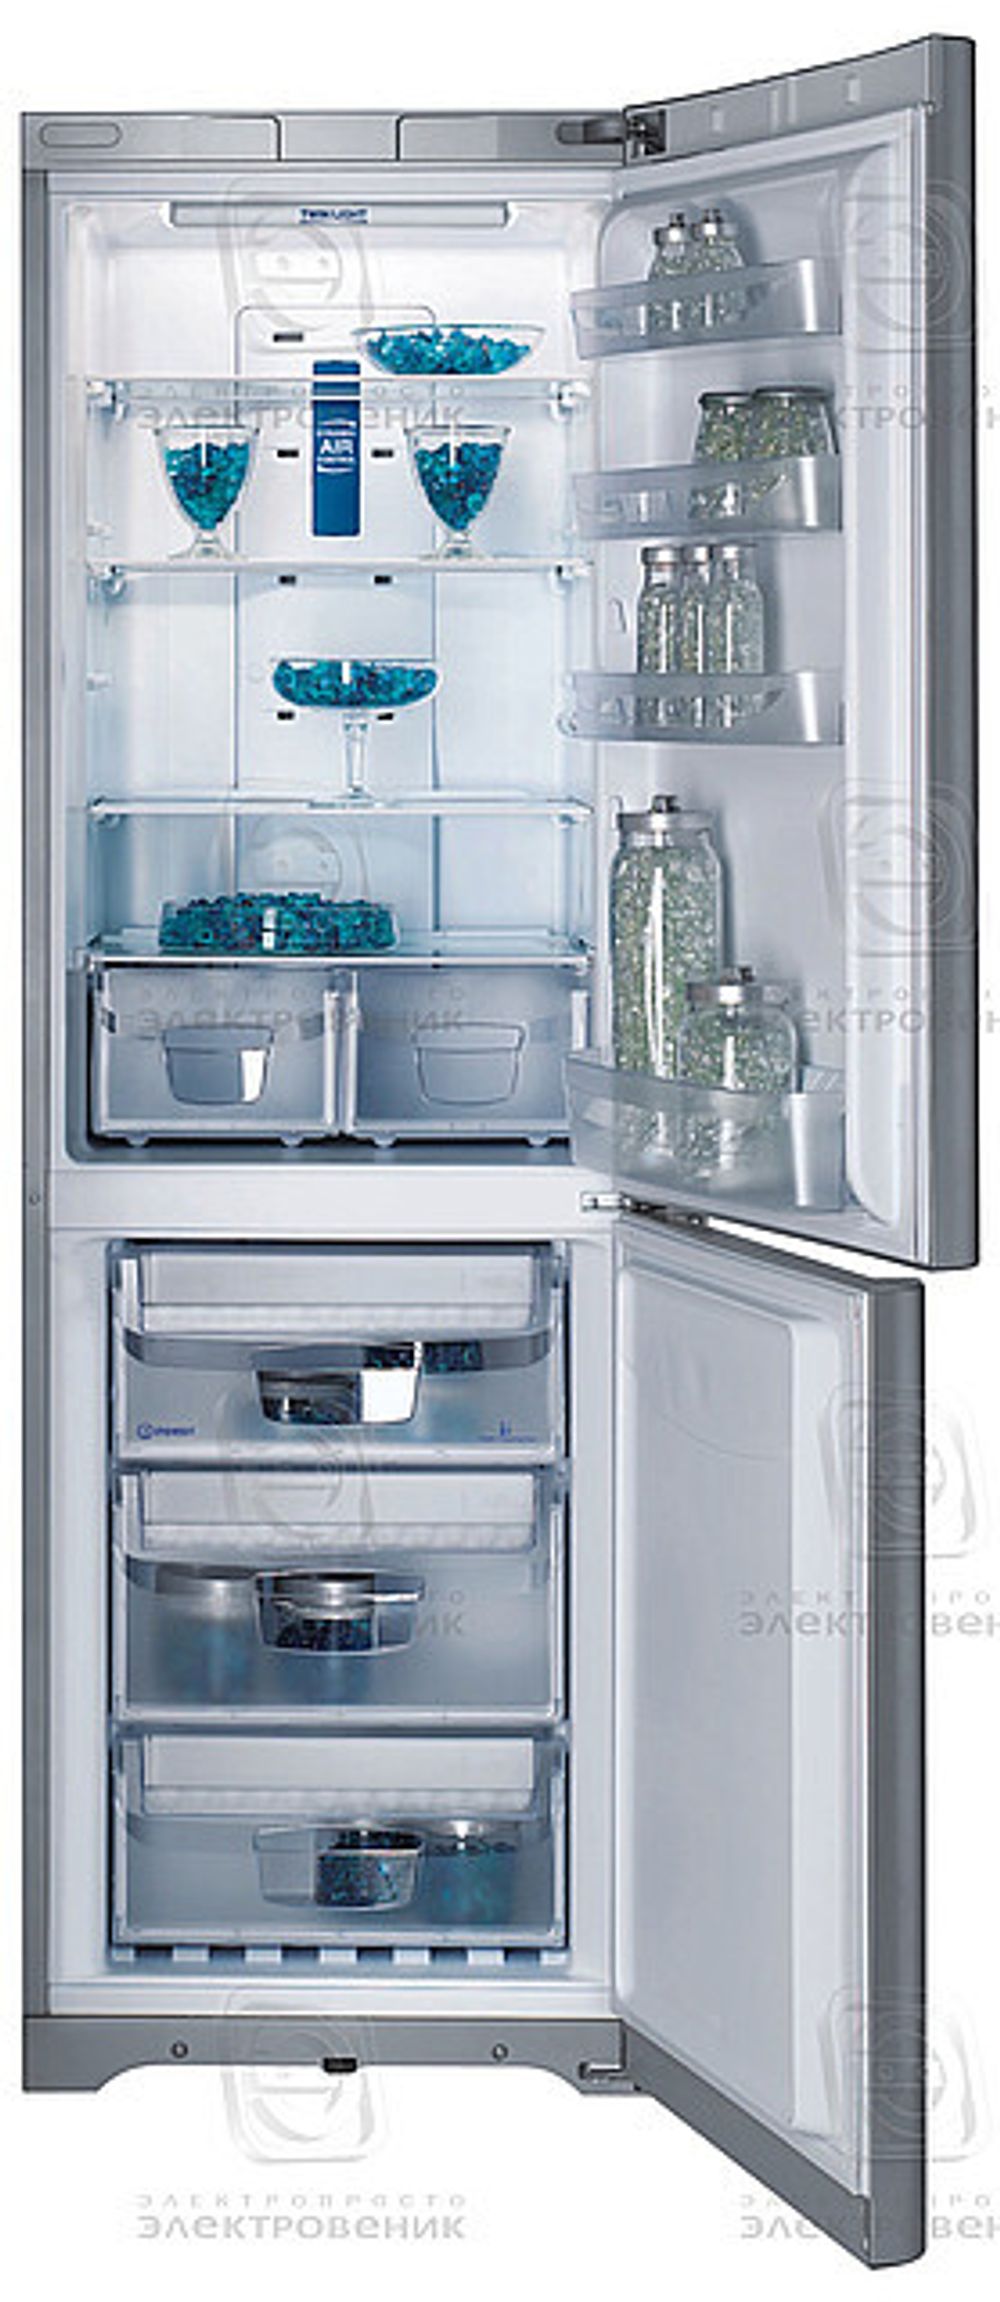 Цены на ремонт холодильников Indesit